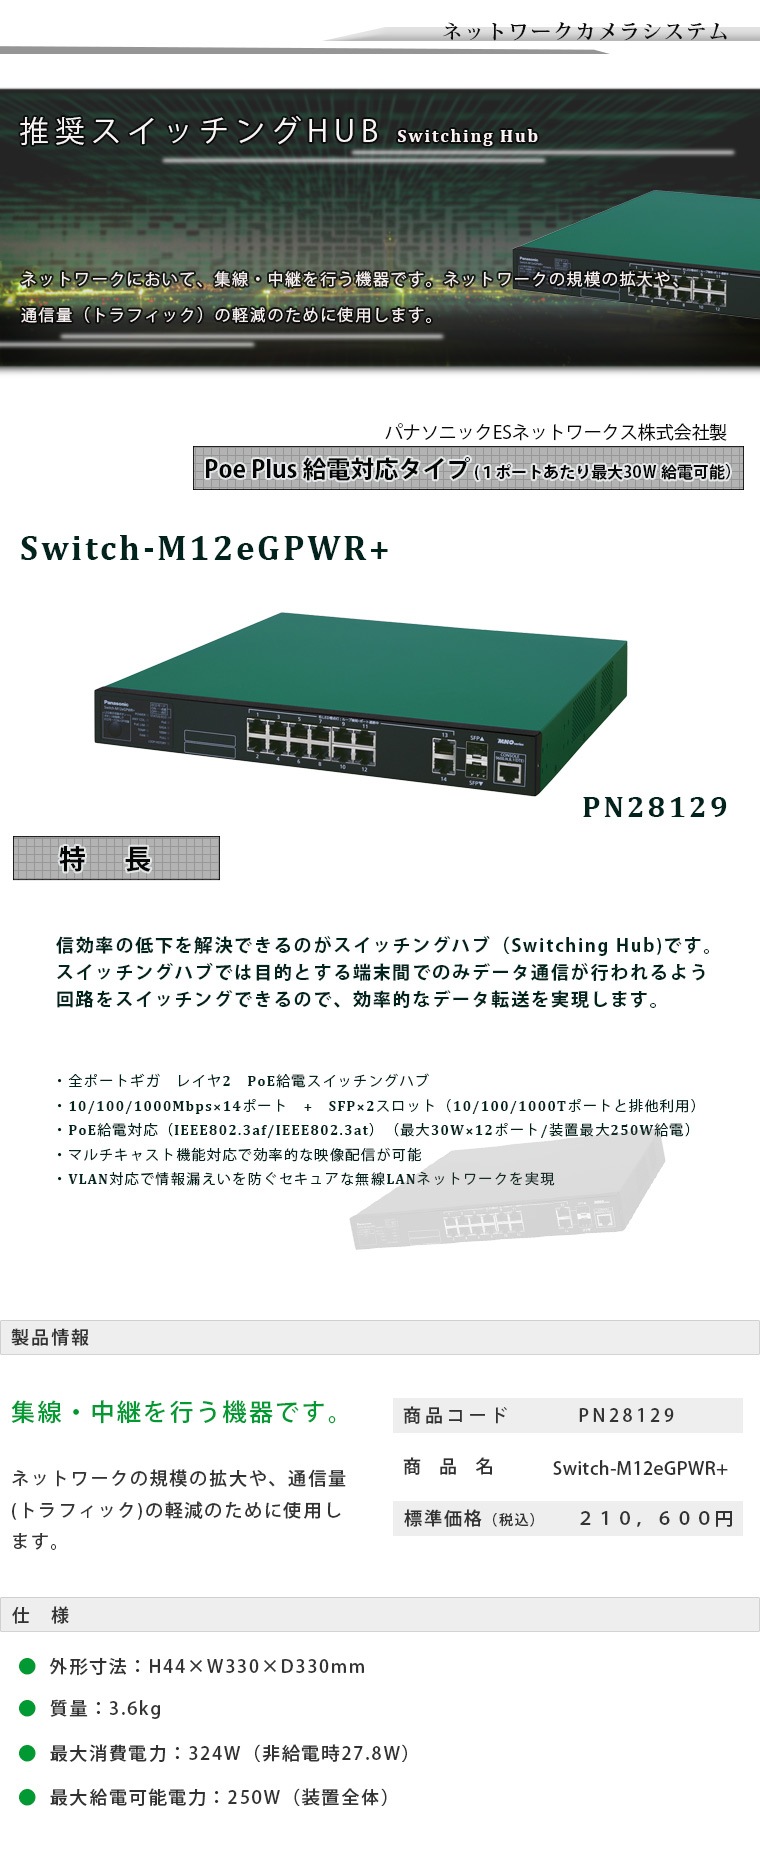 Switch-M12eGPWR+-ライコムオンラインショップ